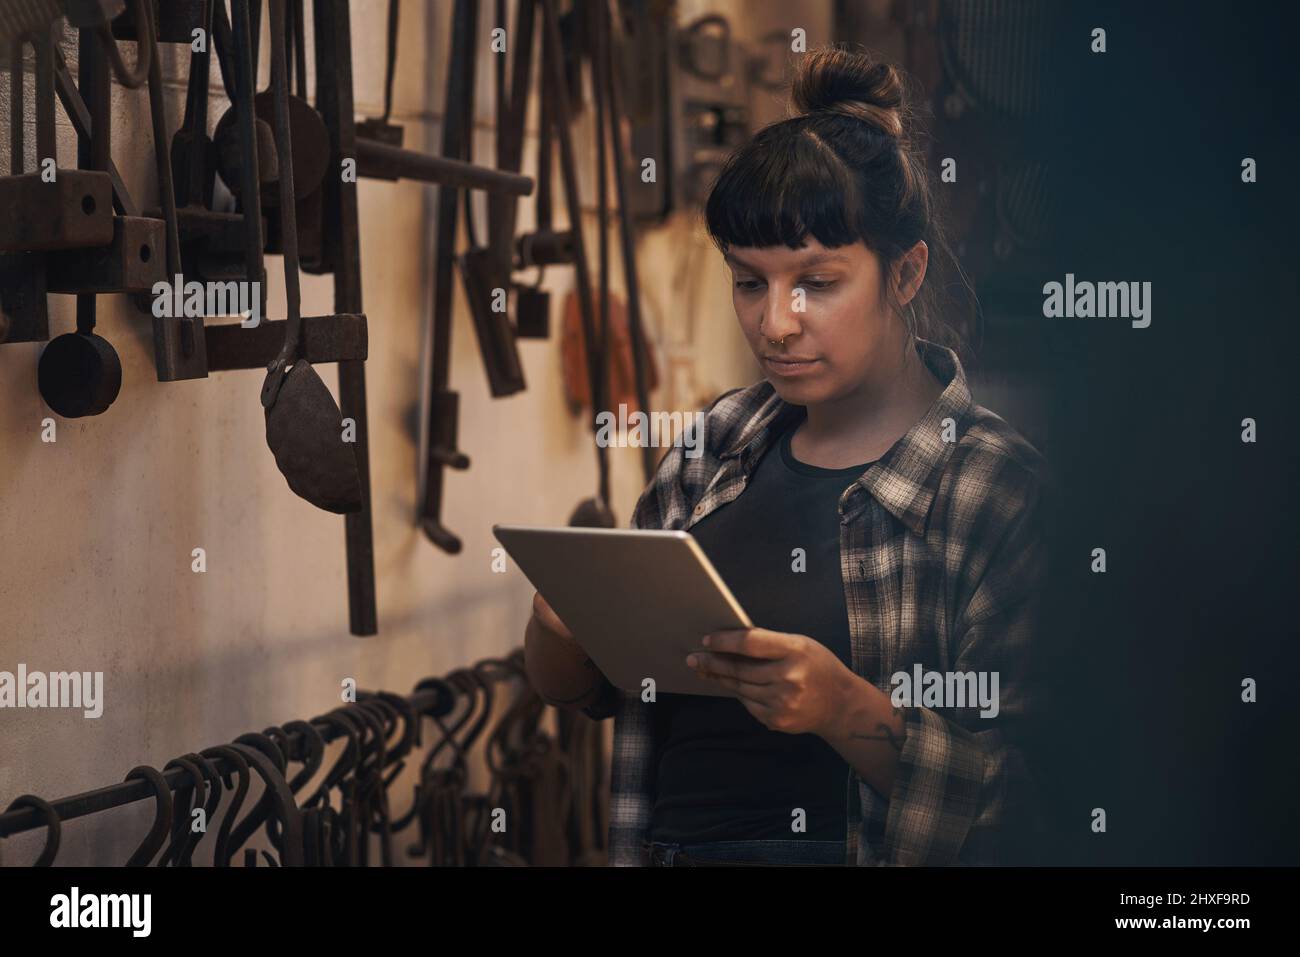 Il commercio della vecchia scuola incontra la nuova tecnologia scolastica. Scatto di una giovane donna che usa un tablet digitale mentre lavora in una fonderia. Foto Stock